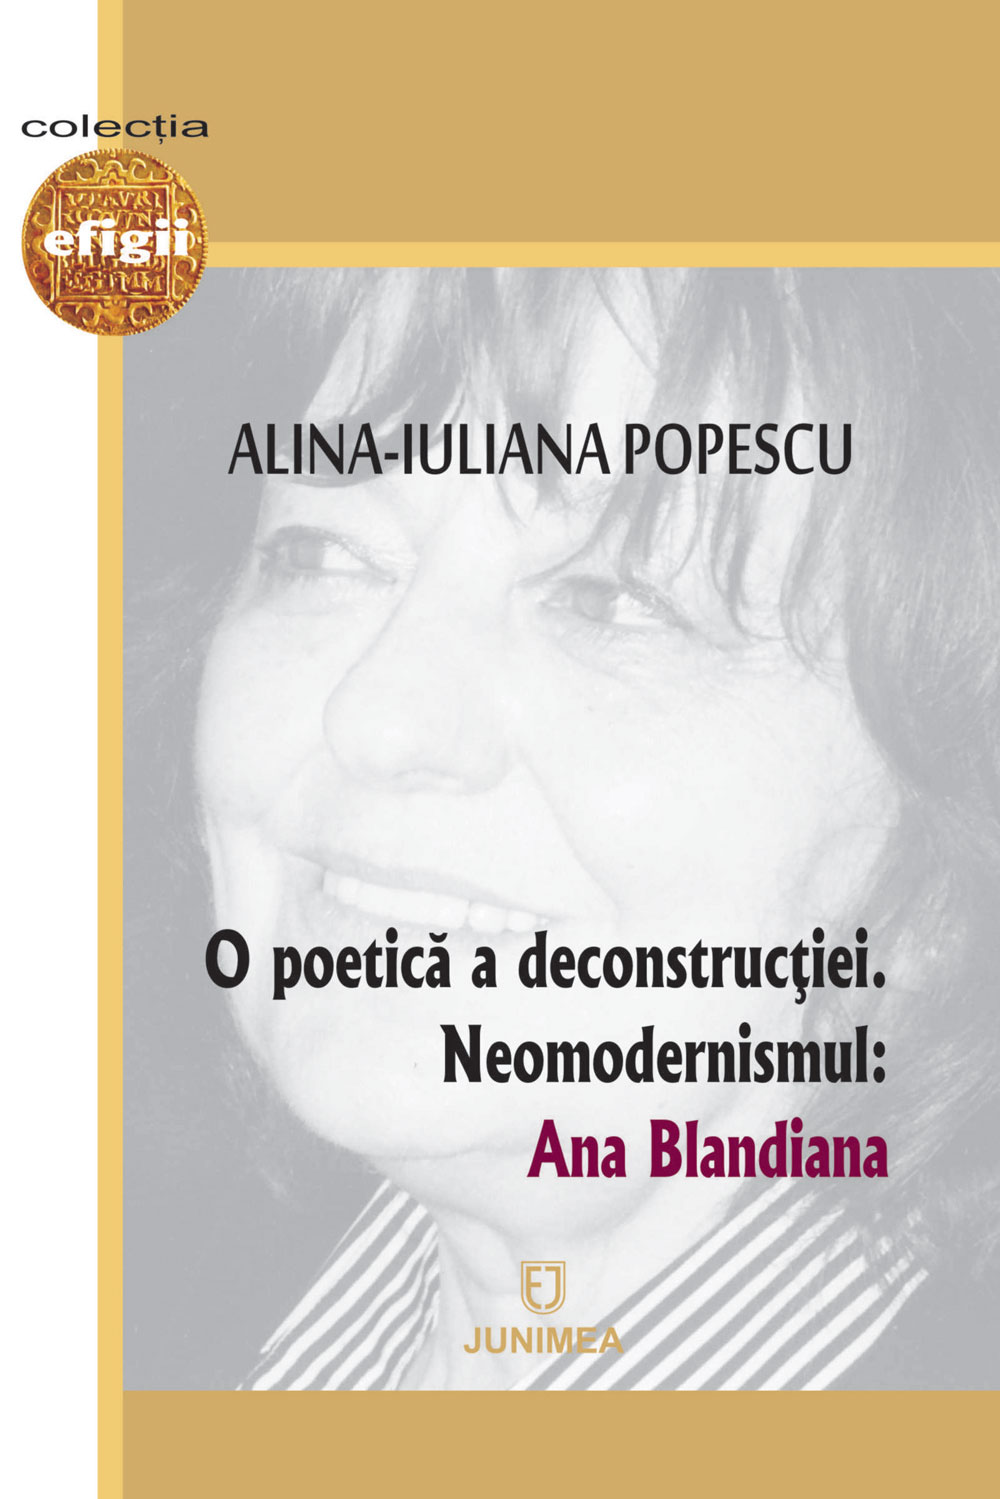 O poetica a deconstructiei | Alina-Iuliana Popescu carturesti.ro imagine 2022